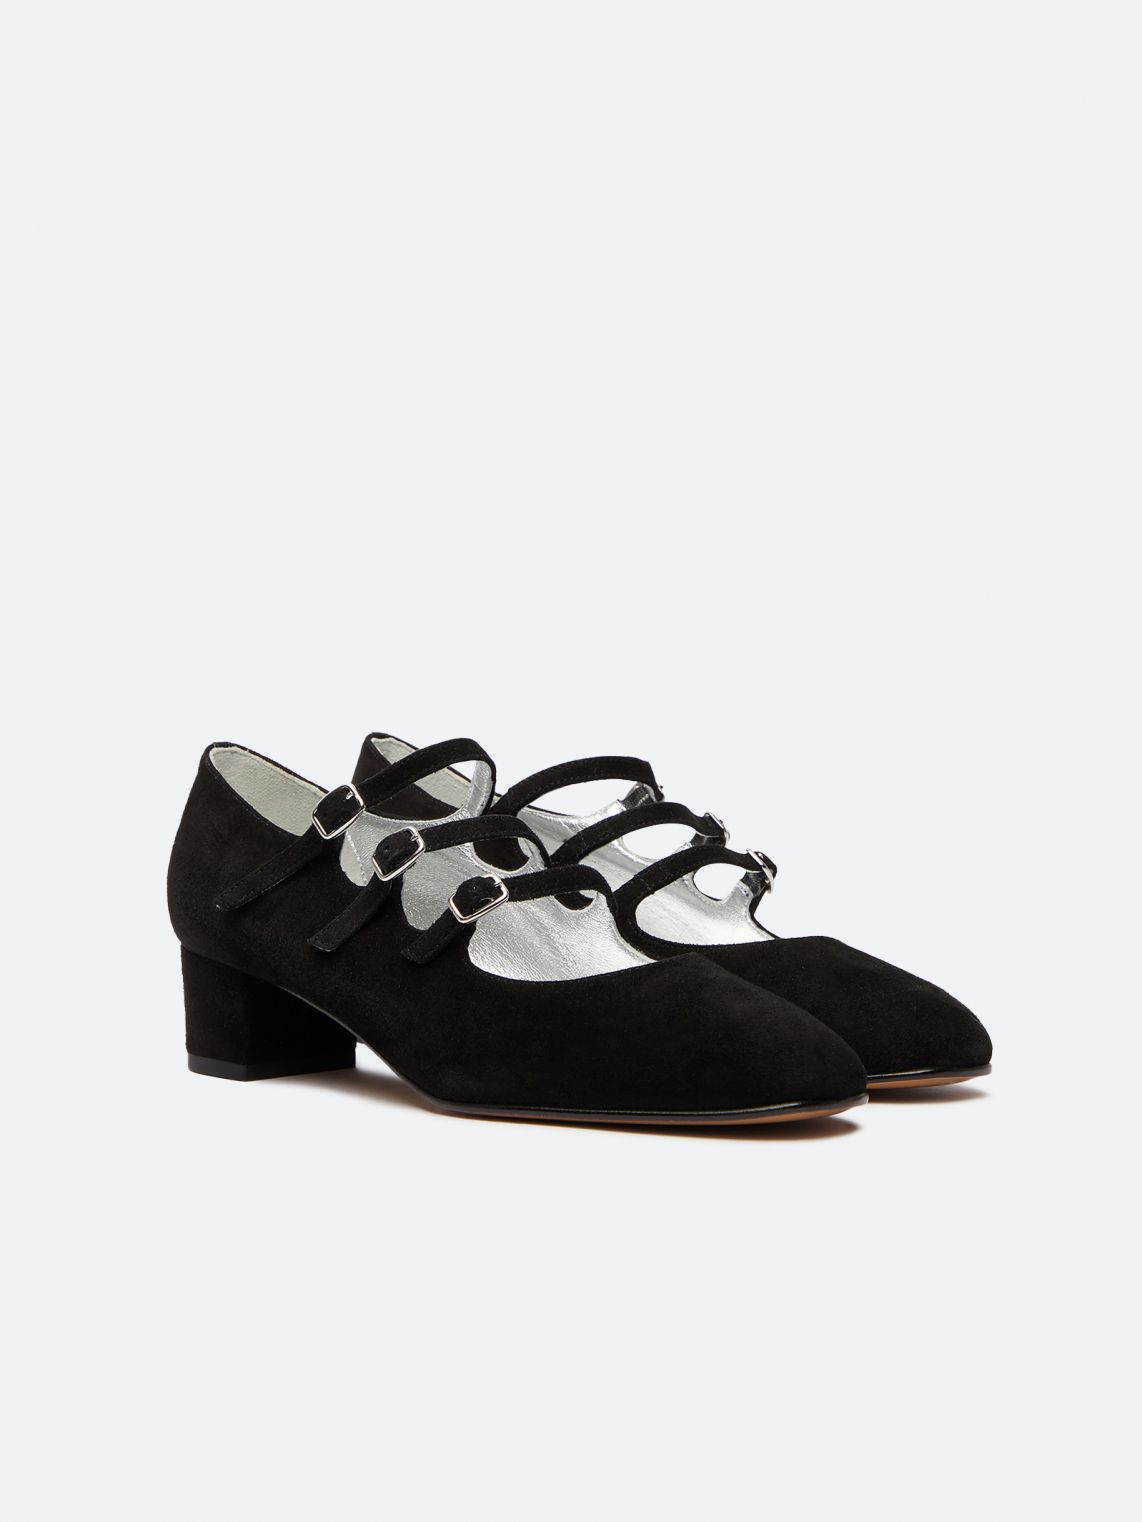 KINA black suede leather Mary Janes pumps | Carel Paris Shoes